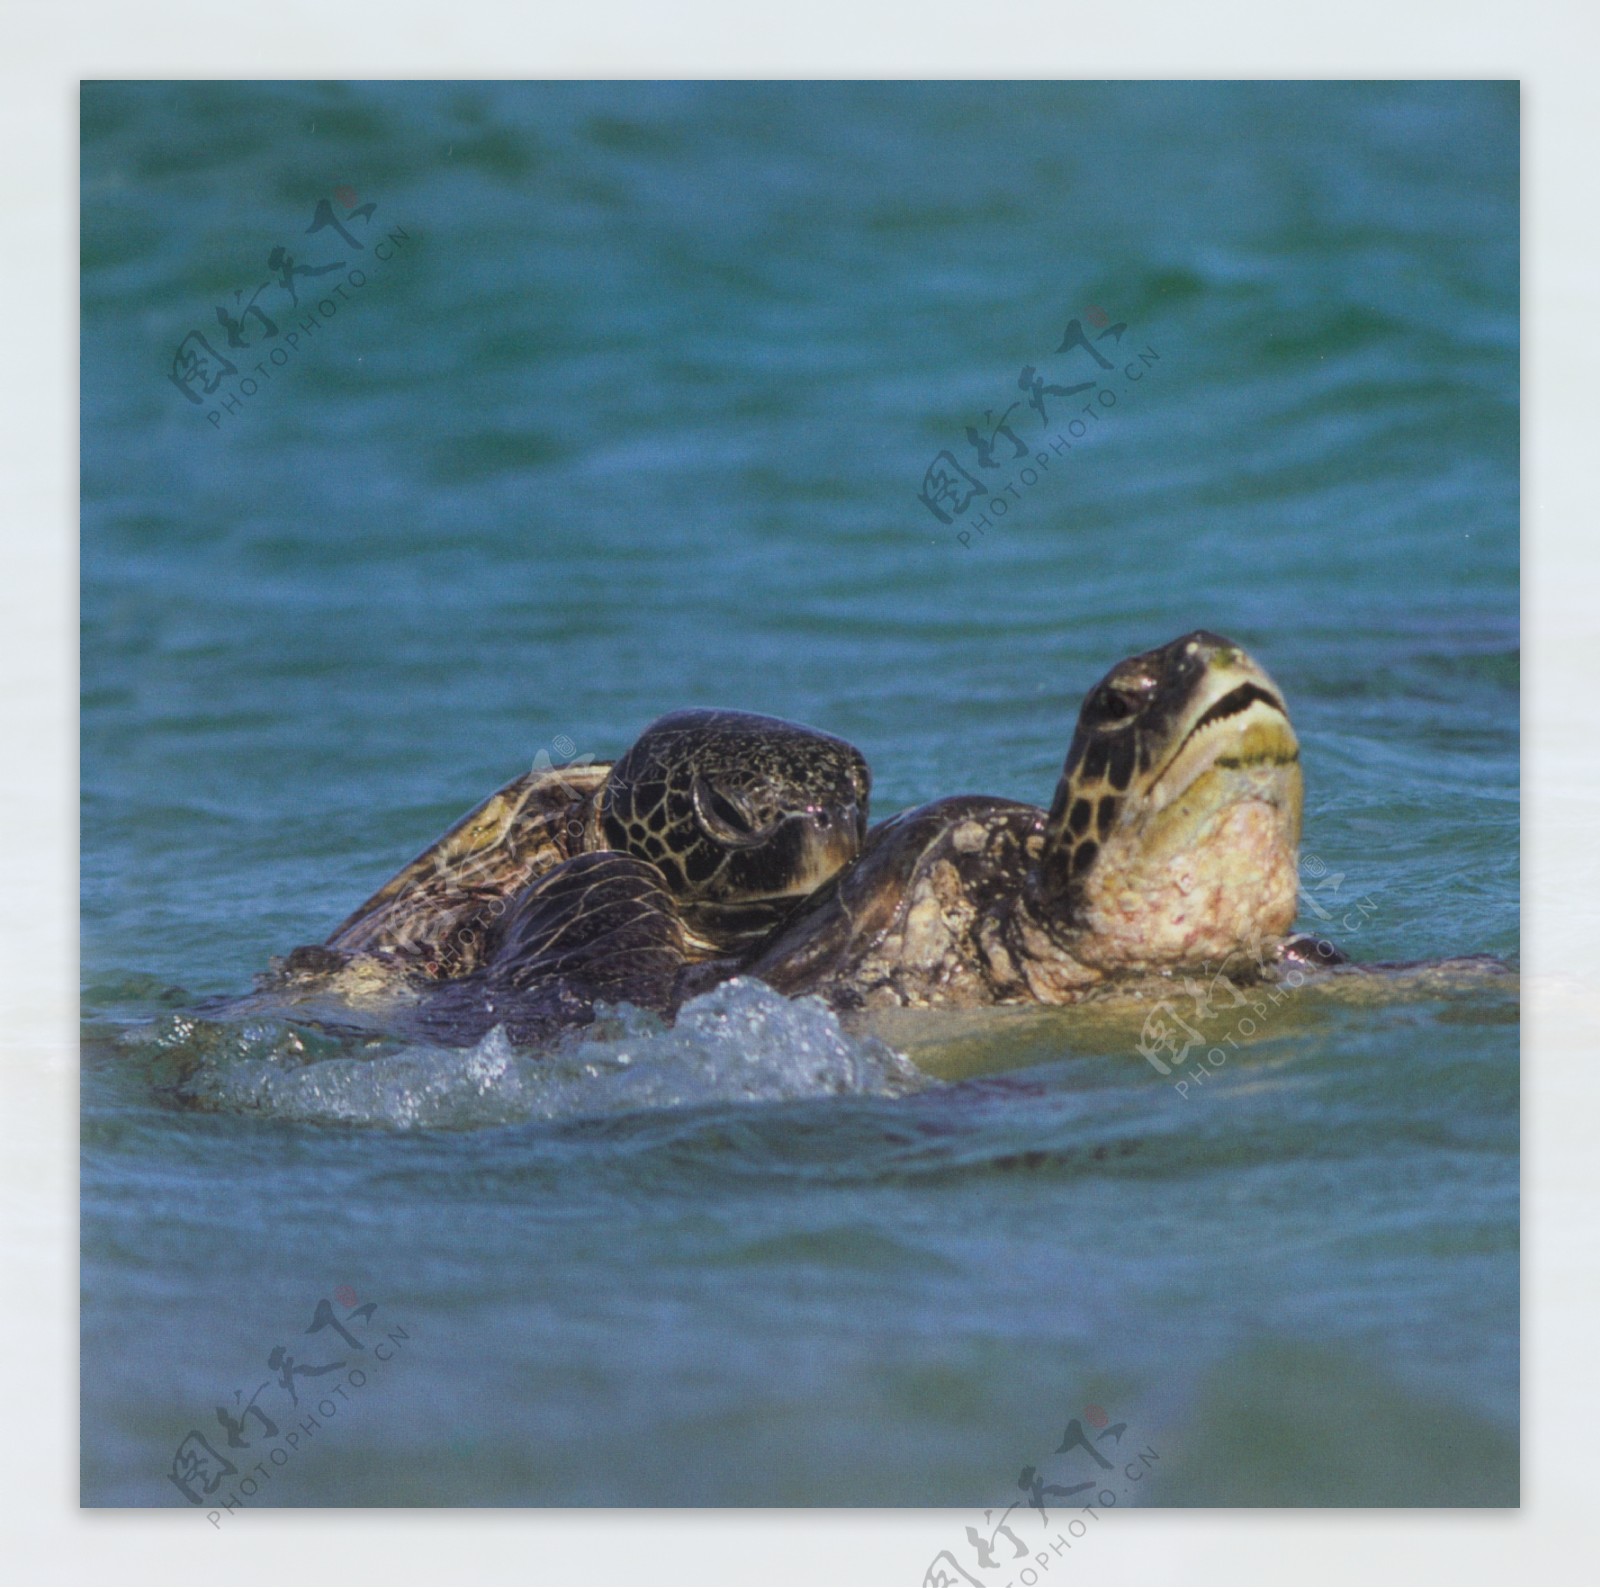 乌龟爬行动物动物图片